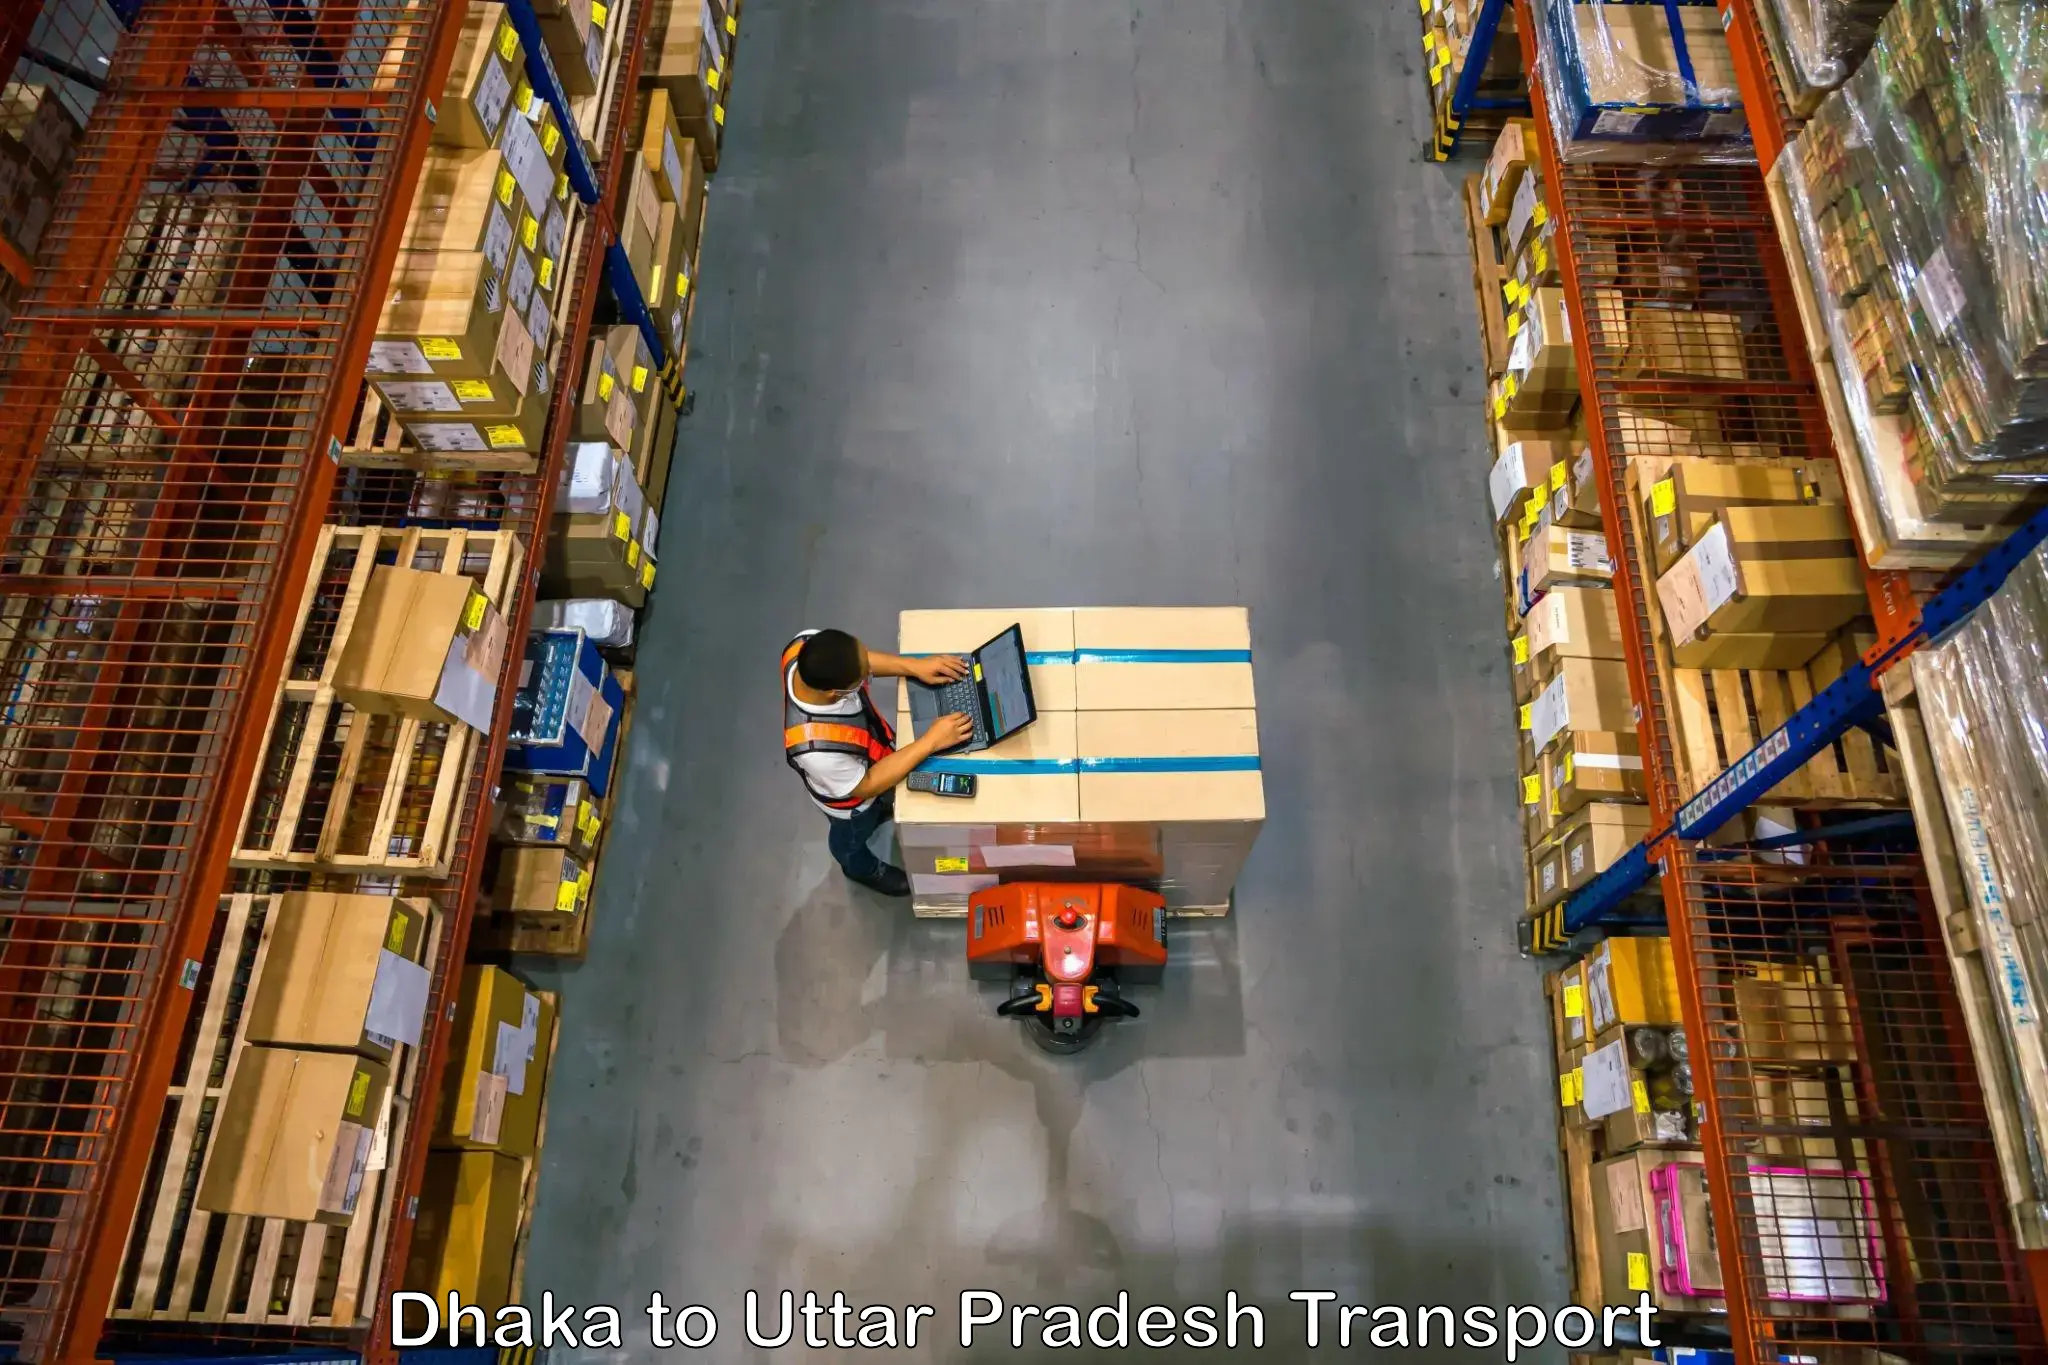 Furniture transport service Dhaka to Biswan